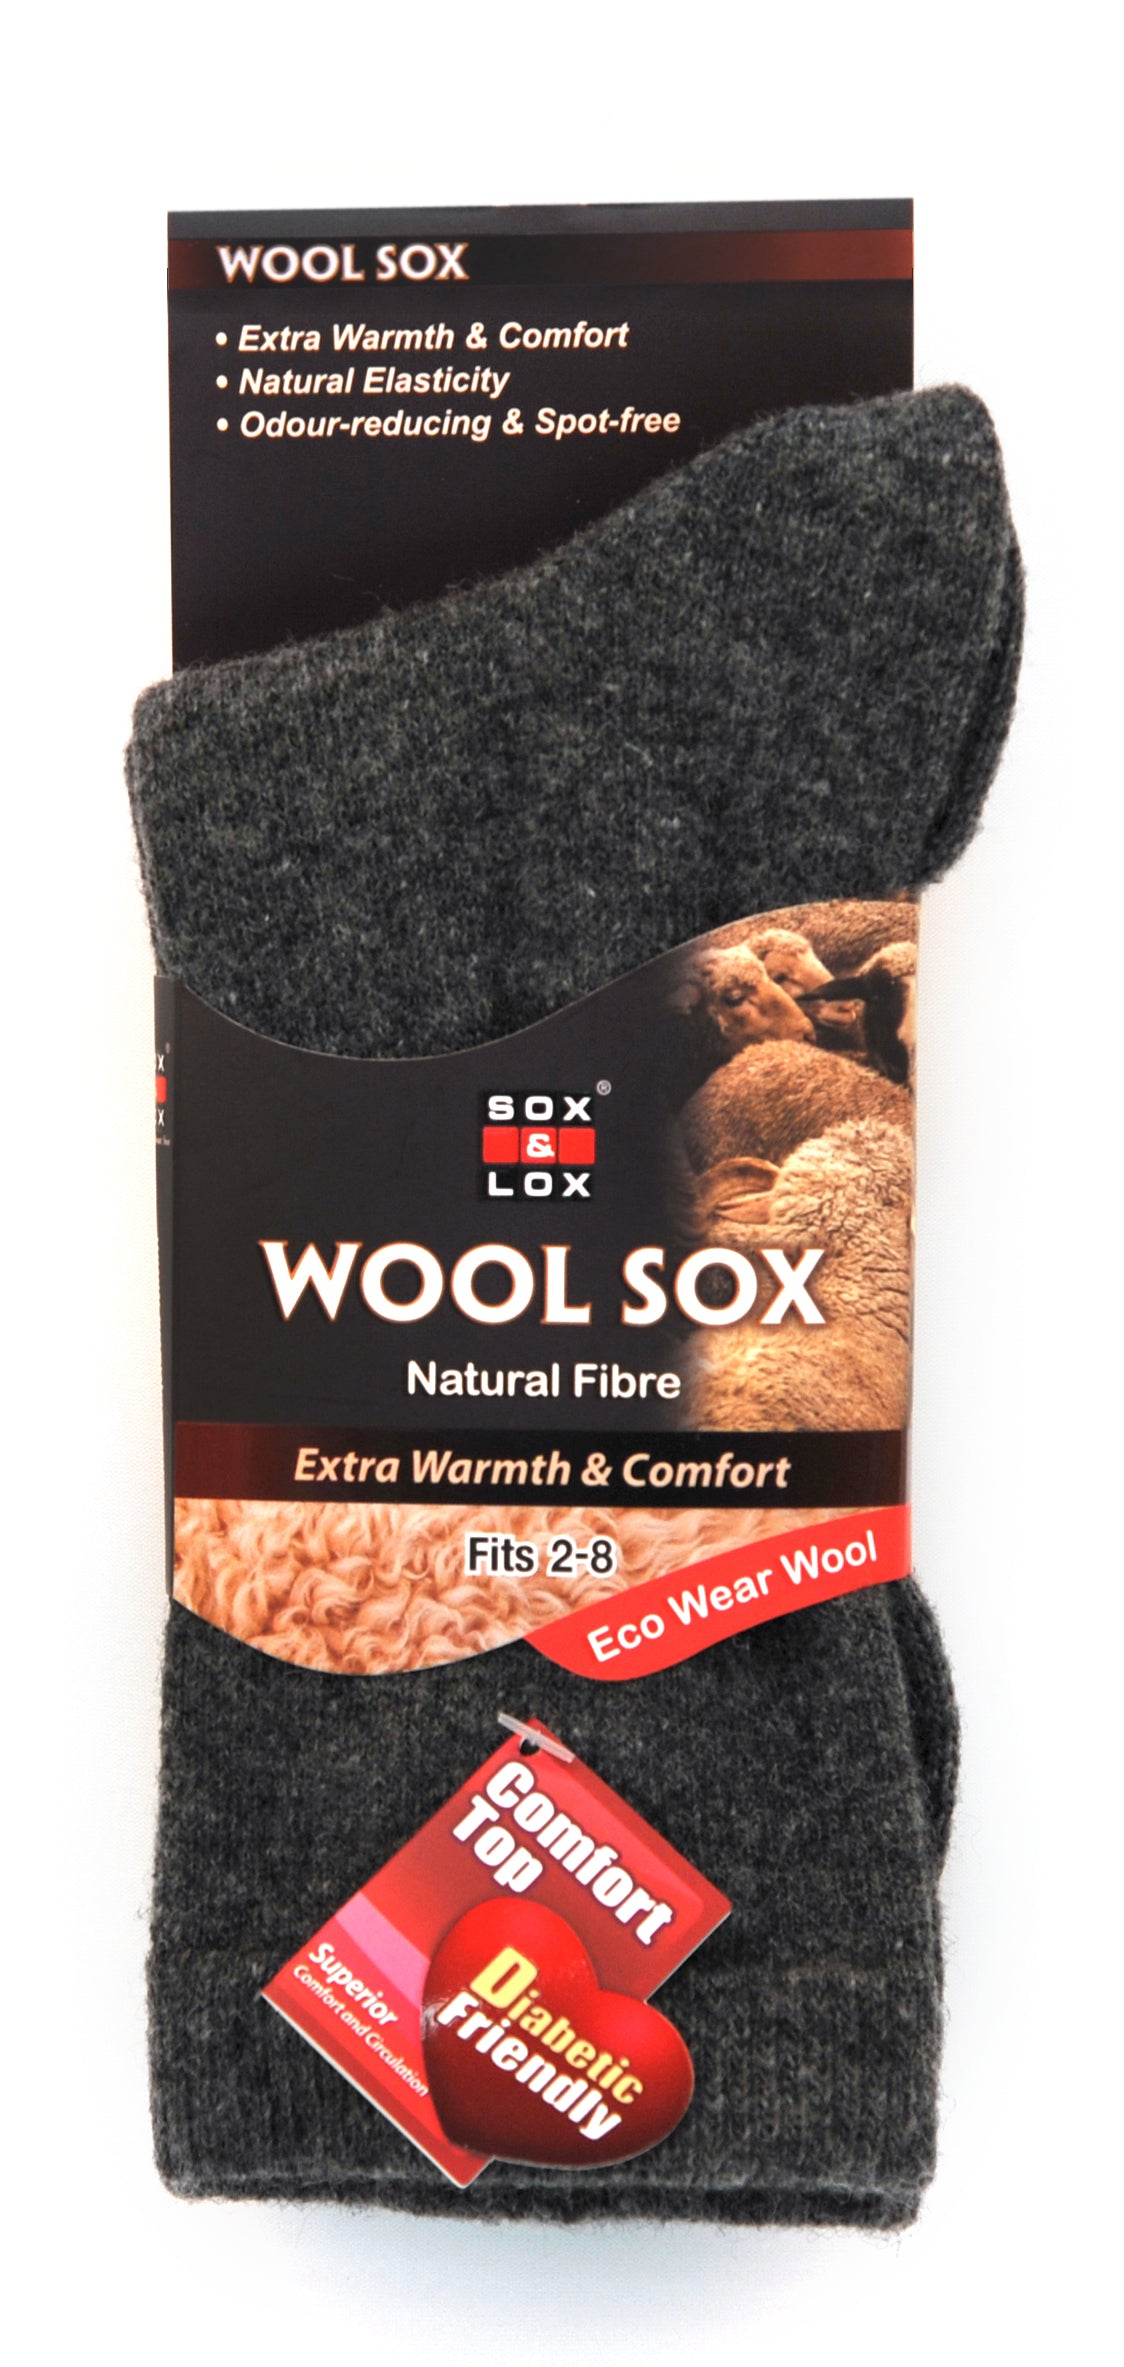 Ladies' Everyday Diabetic Friendly [Wool] SOX&LOX 100% comfortable best socks